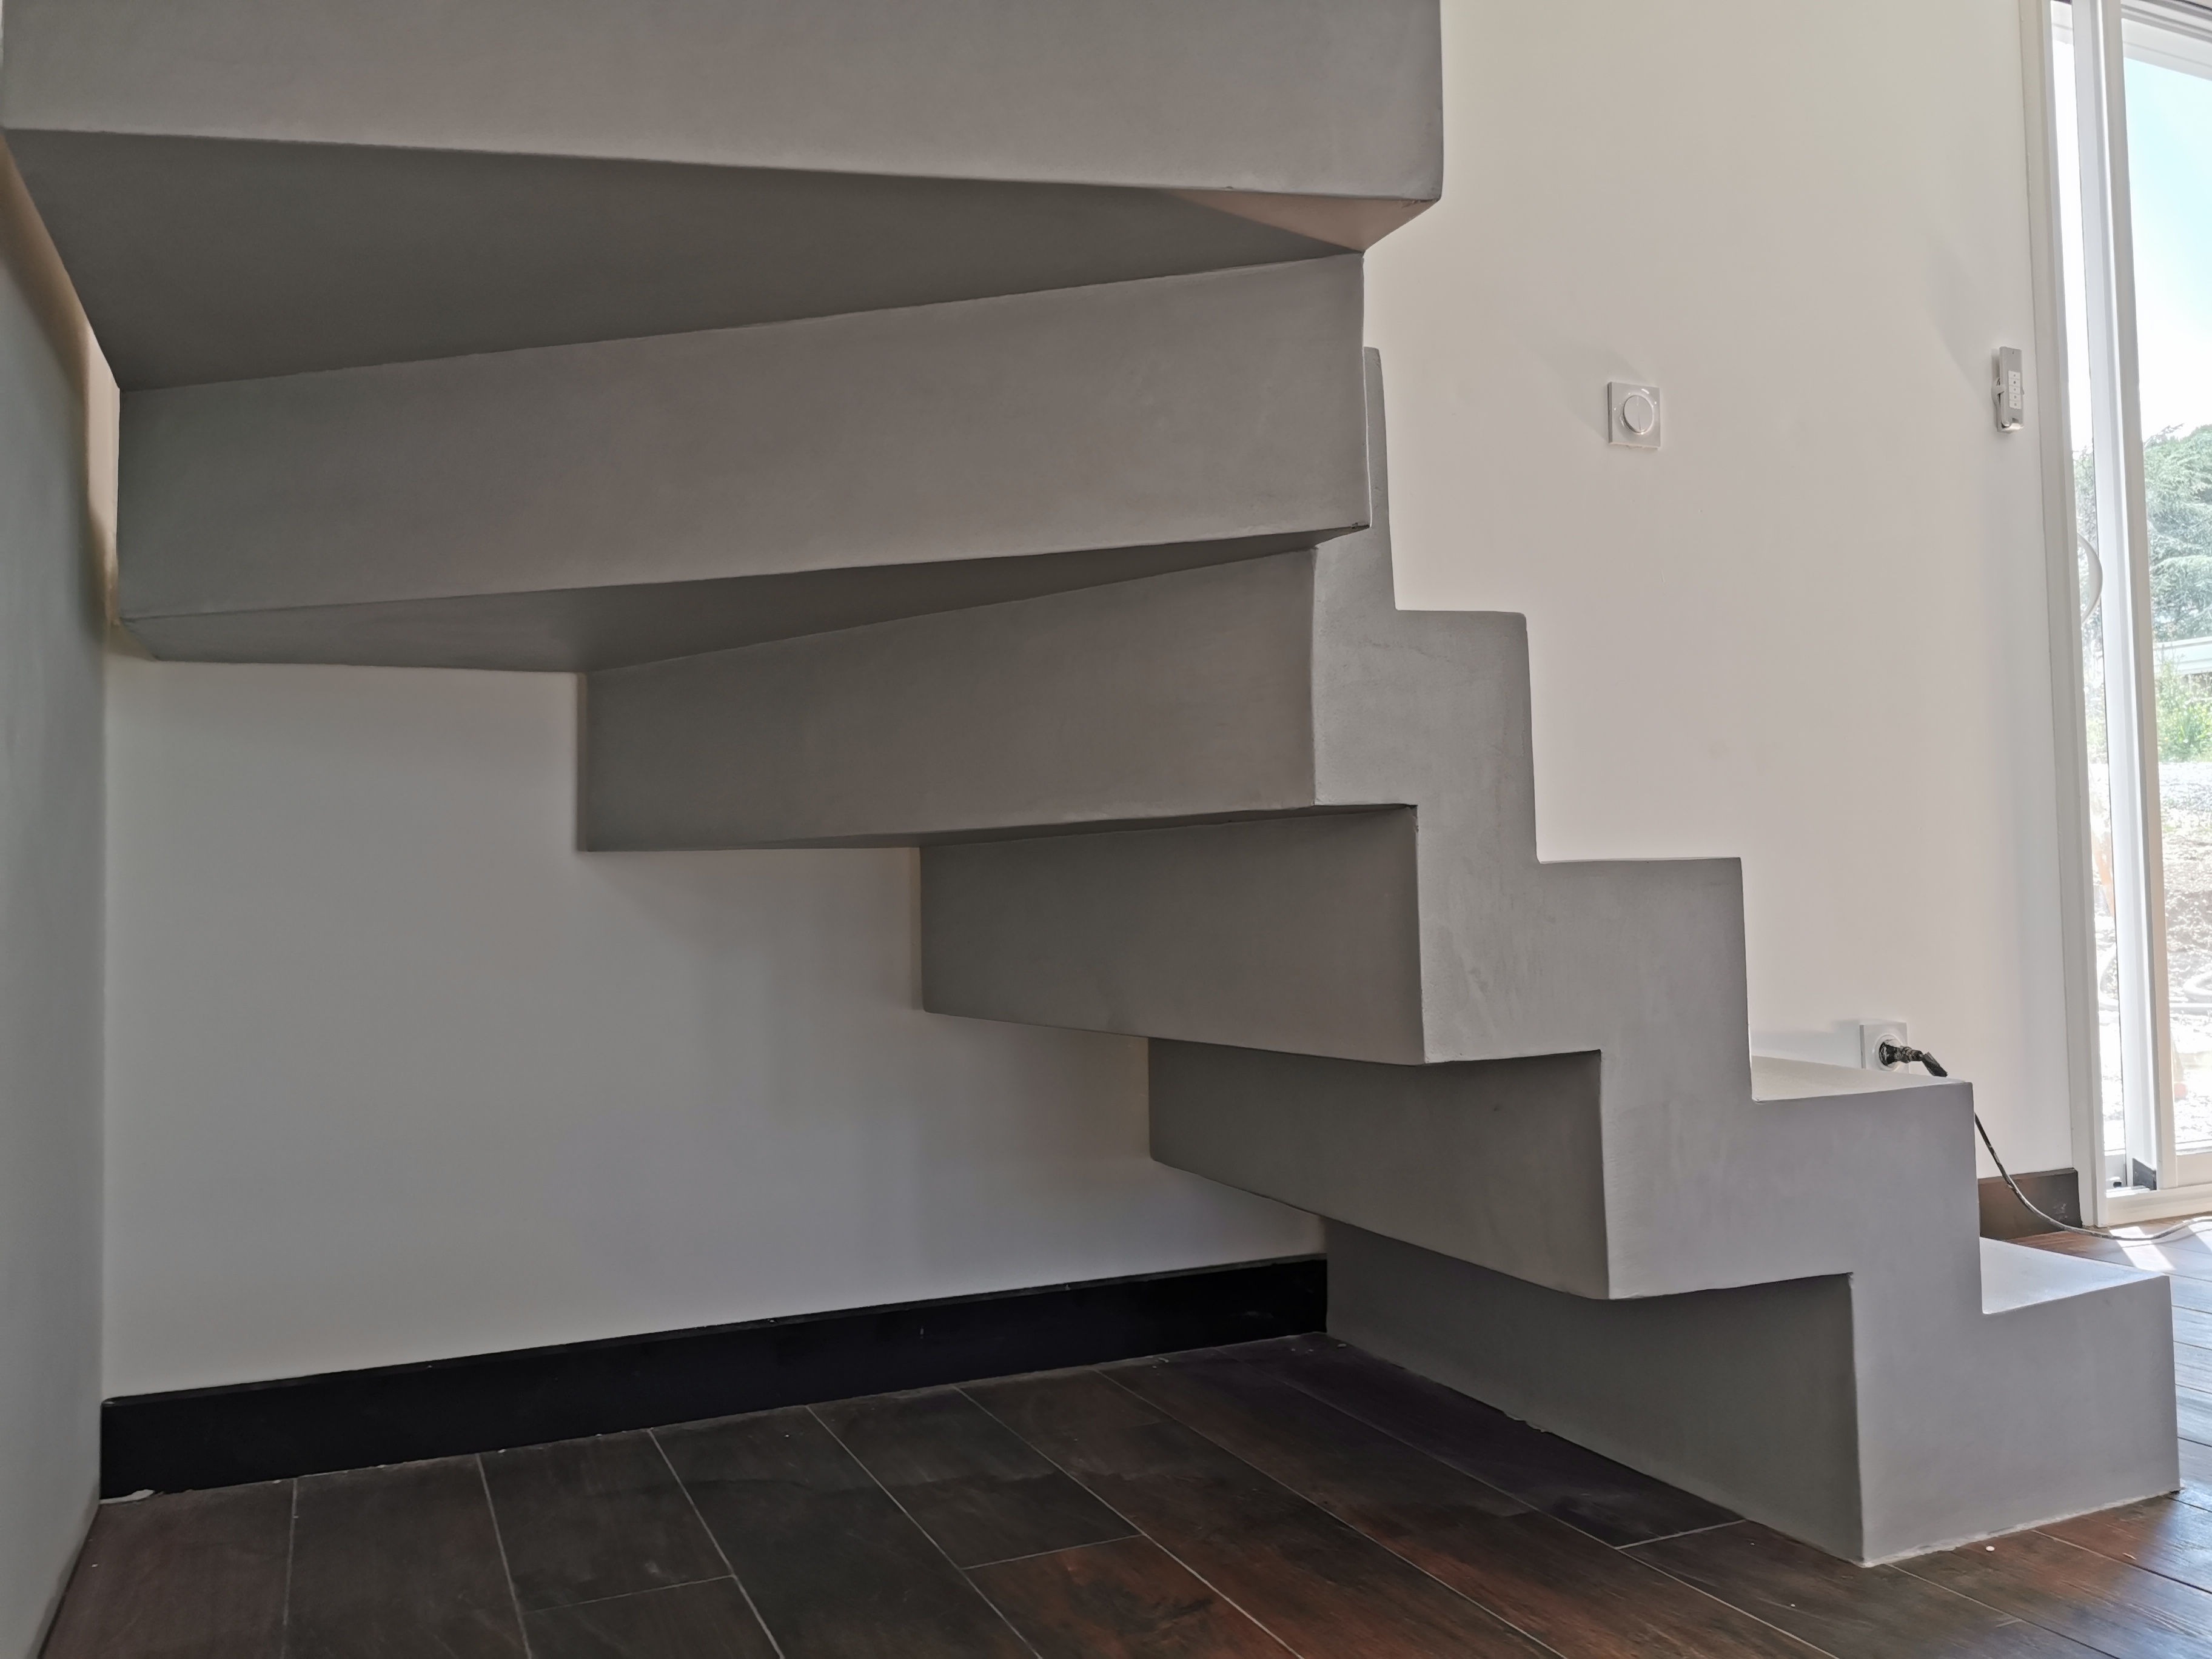 sublime escalier crémaillère décollé du mur en béton ciré vernis mat couleur gris souris À Quinsac près de bordeaux pour un constructeur